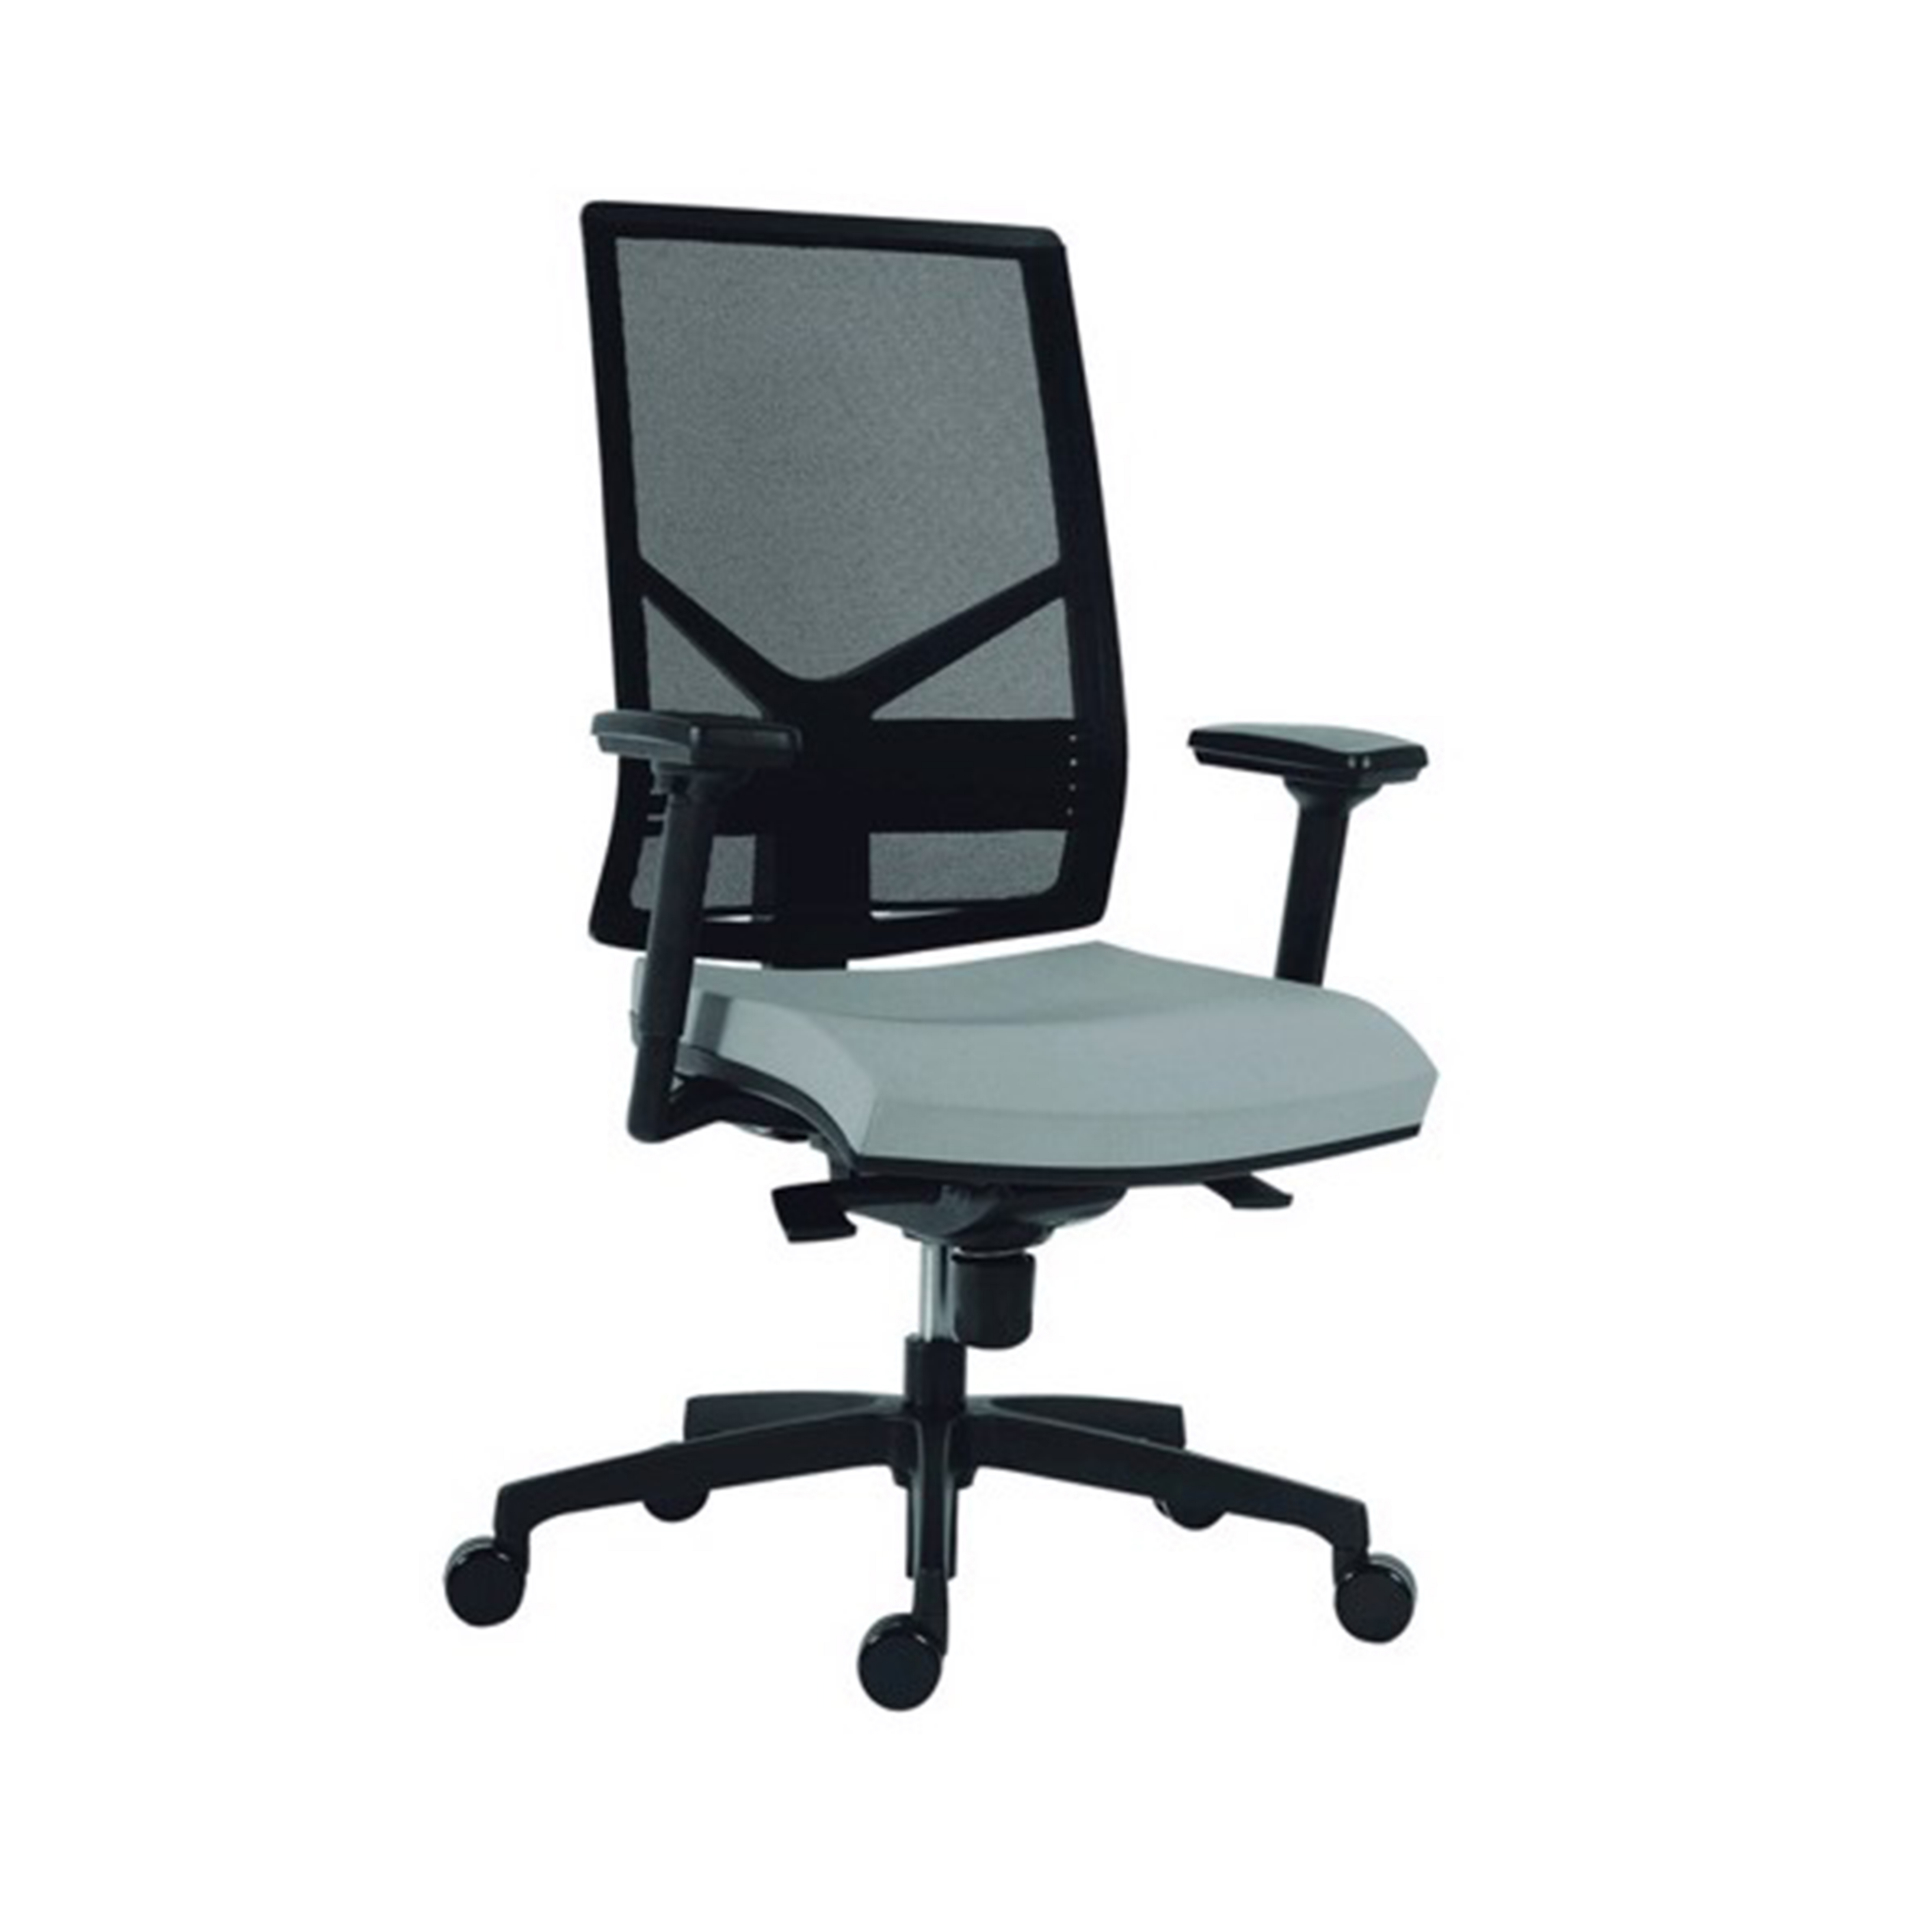 Kancelářská židle Omnia šedá